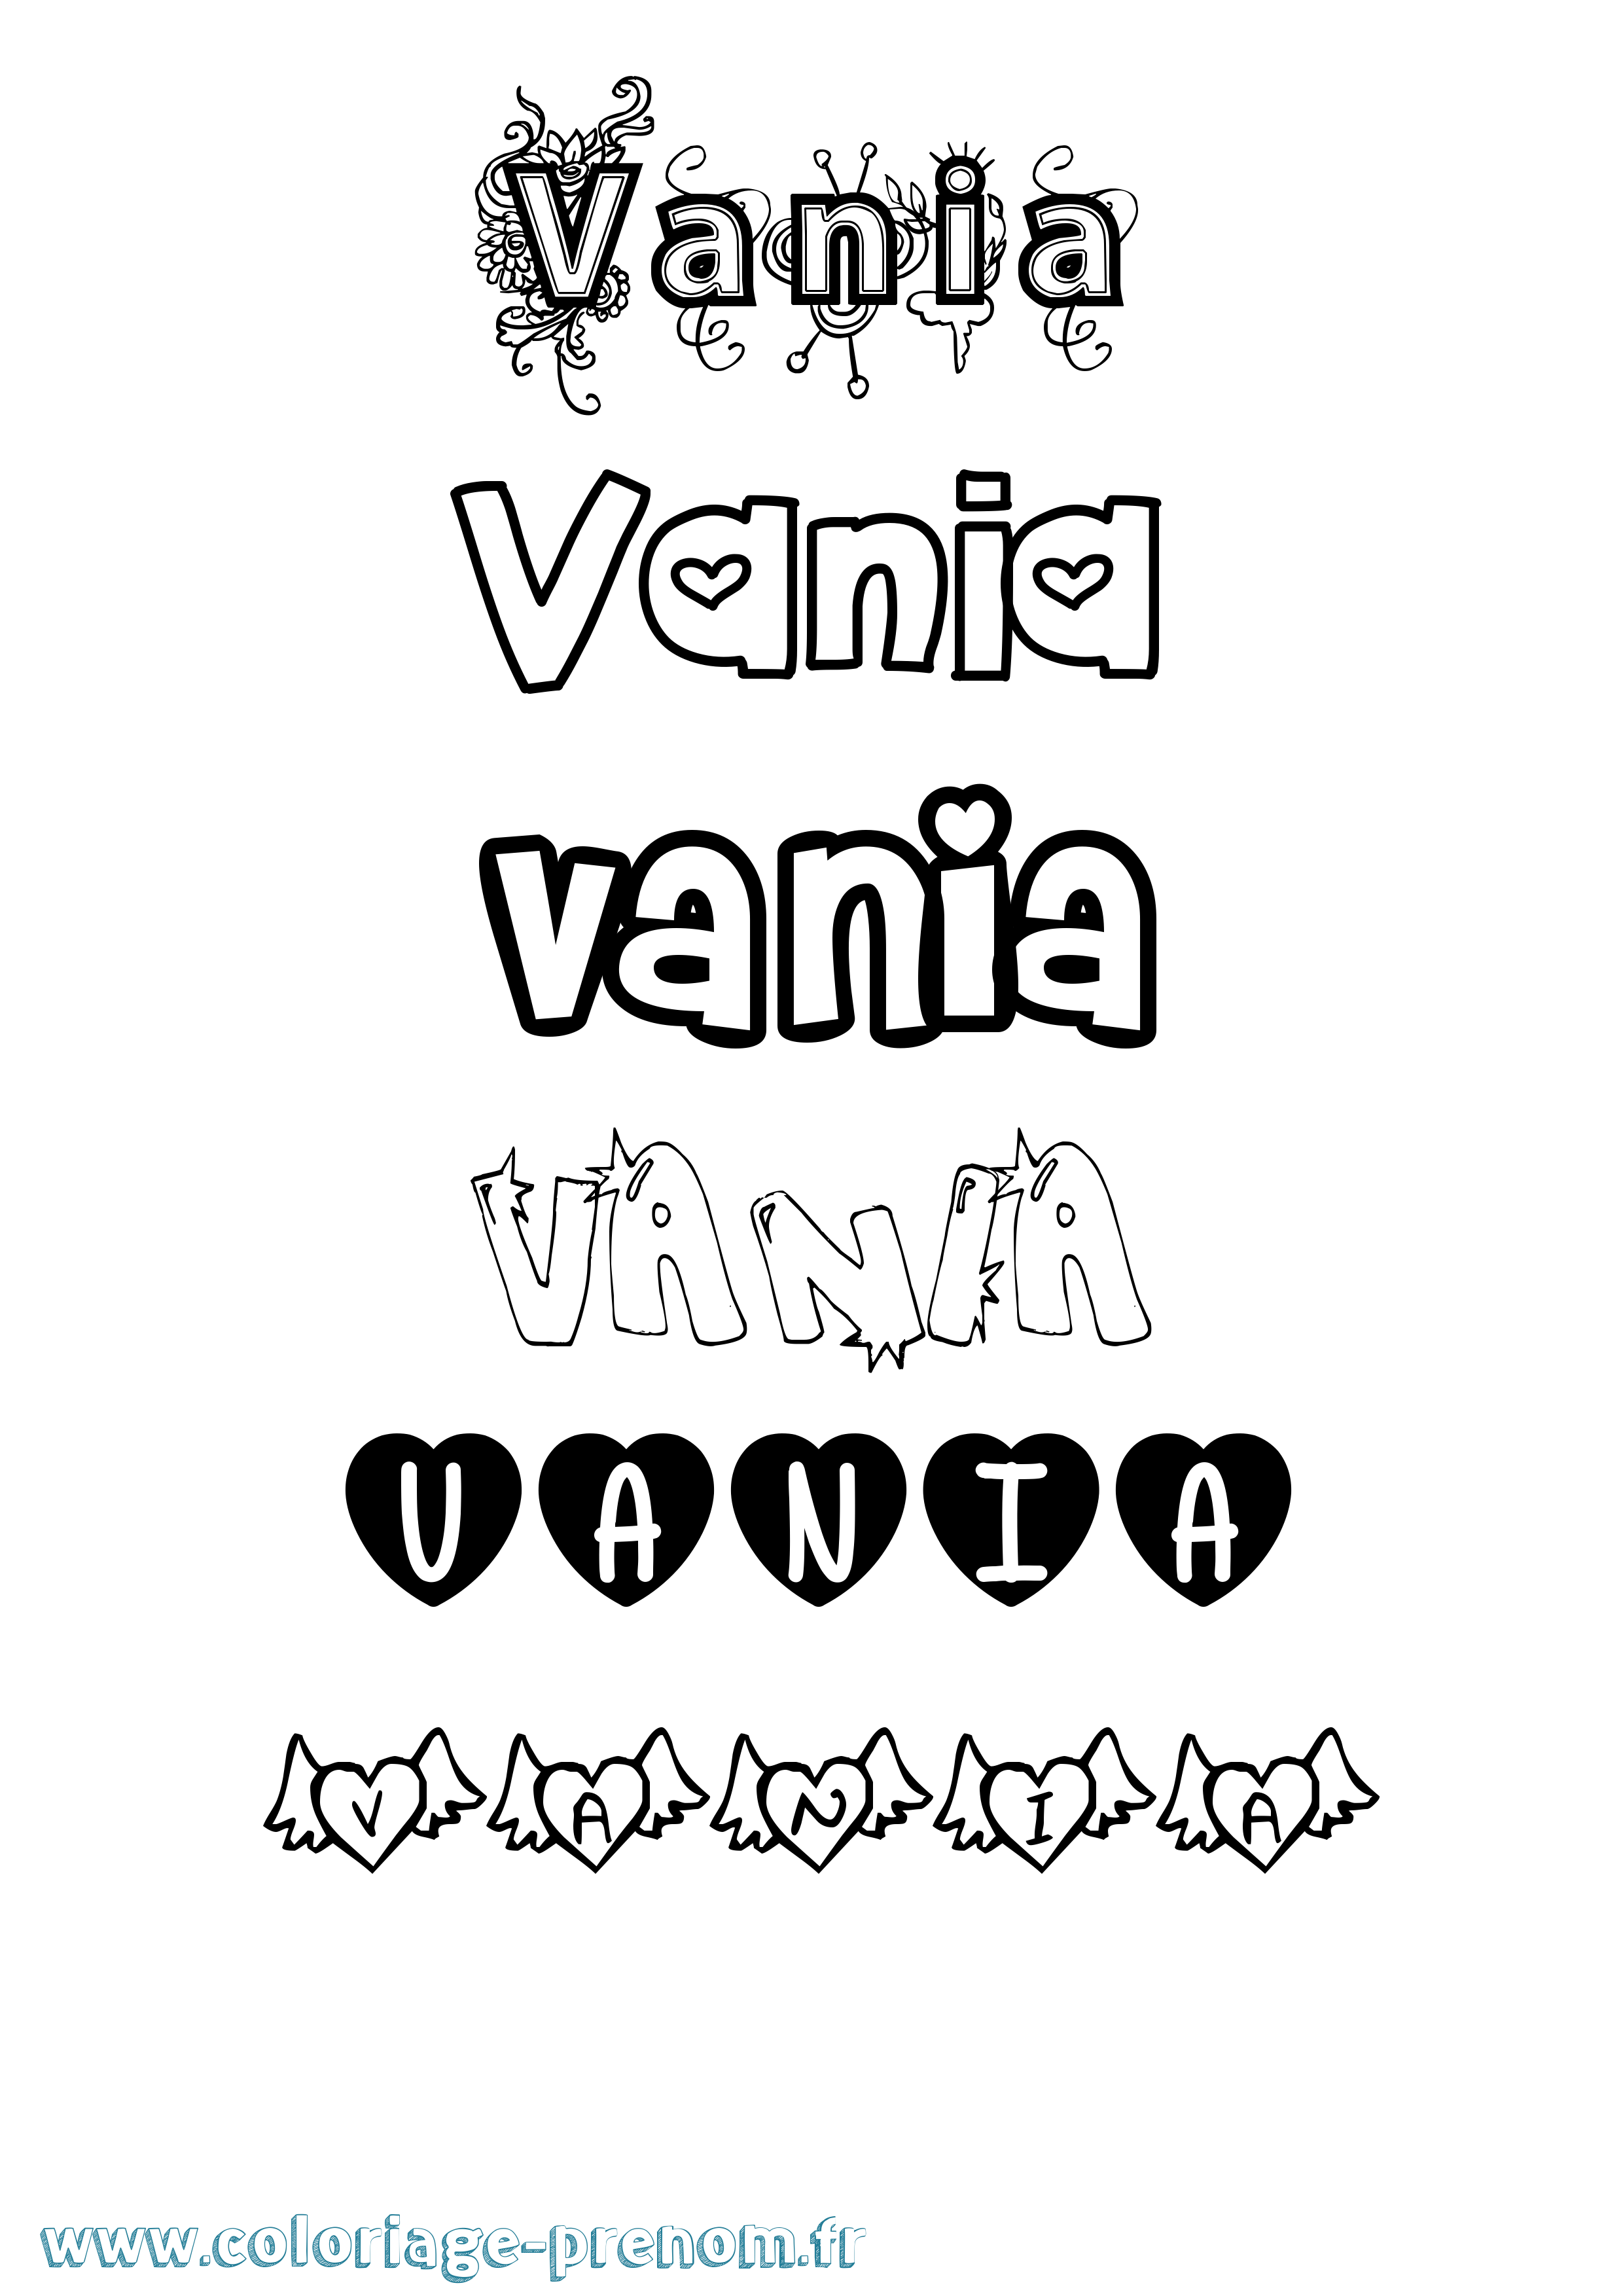 Coloriage prénom Vania Girly